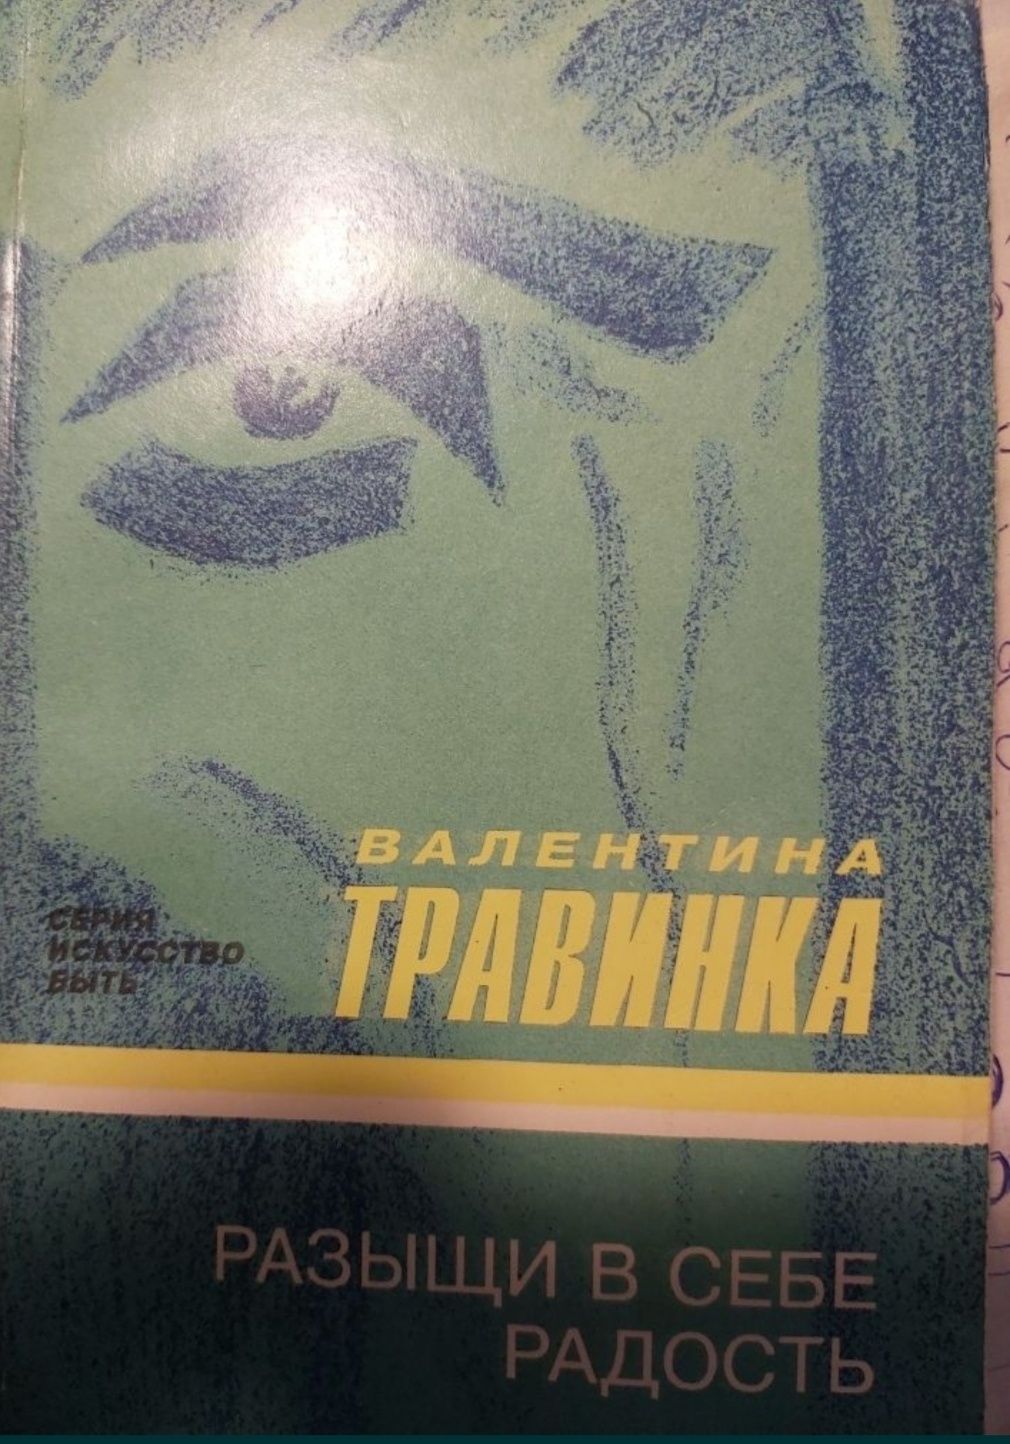 Валентина Травинка Разыщи в себе радость 1994 г. изд.